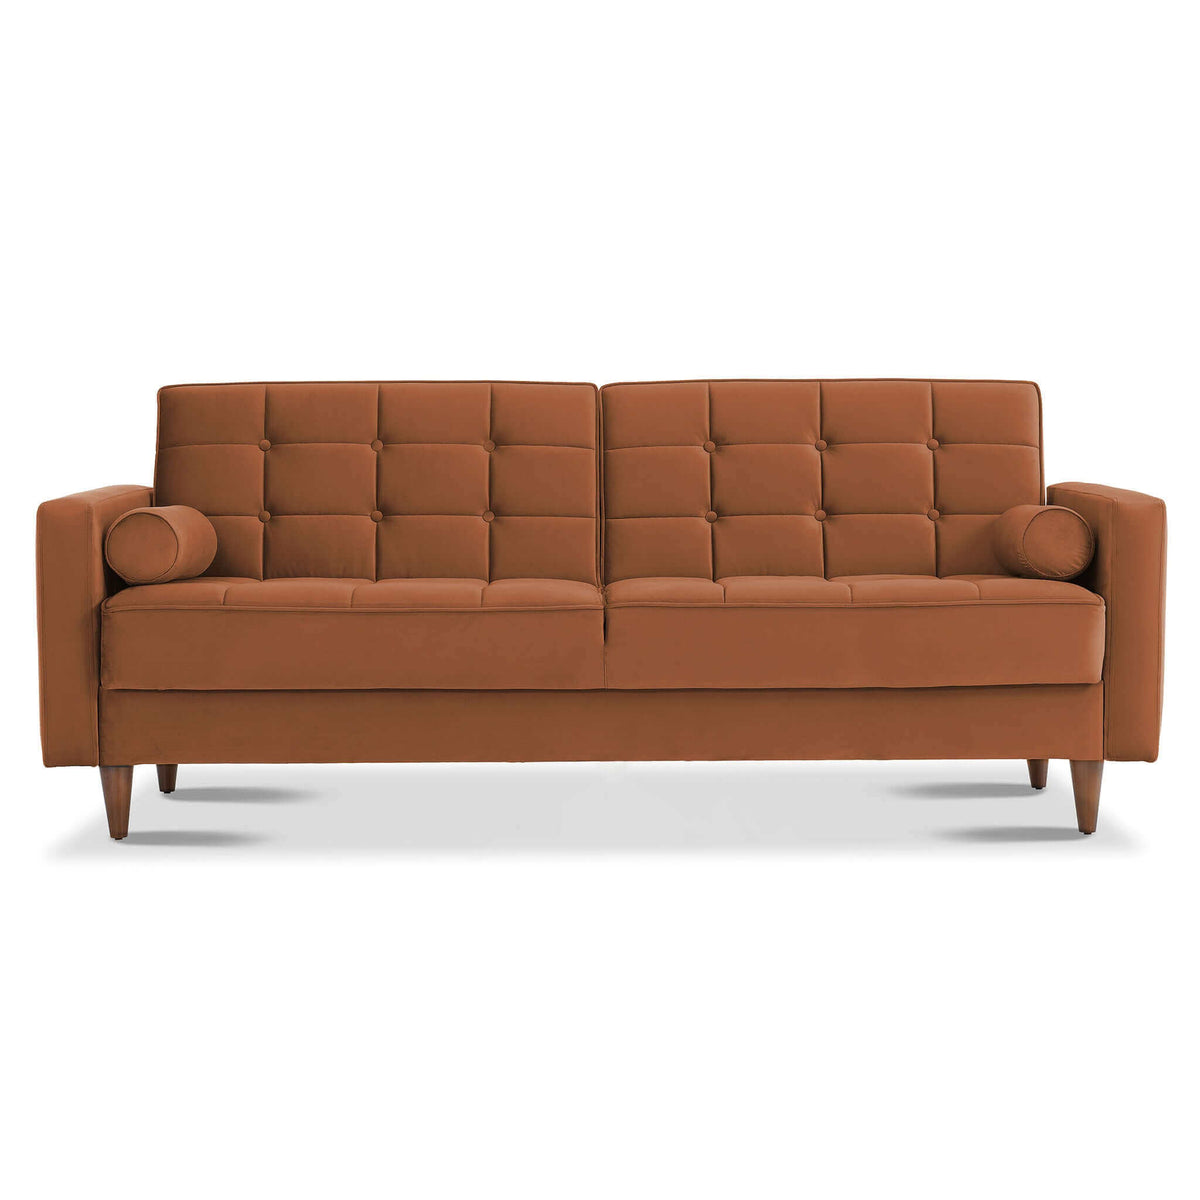 Baneton  Mid-Century Modern Burnt Orange Velvet Sleeper Sofa